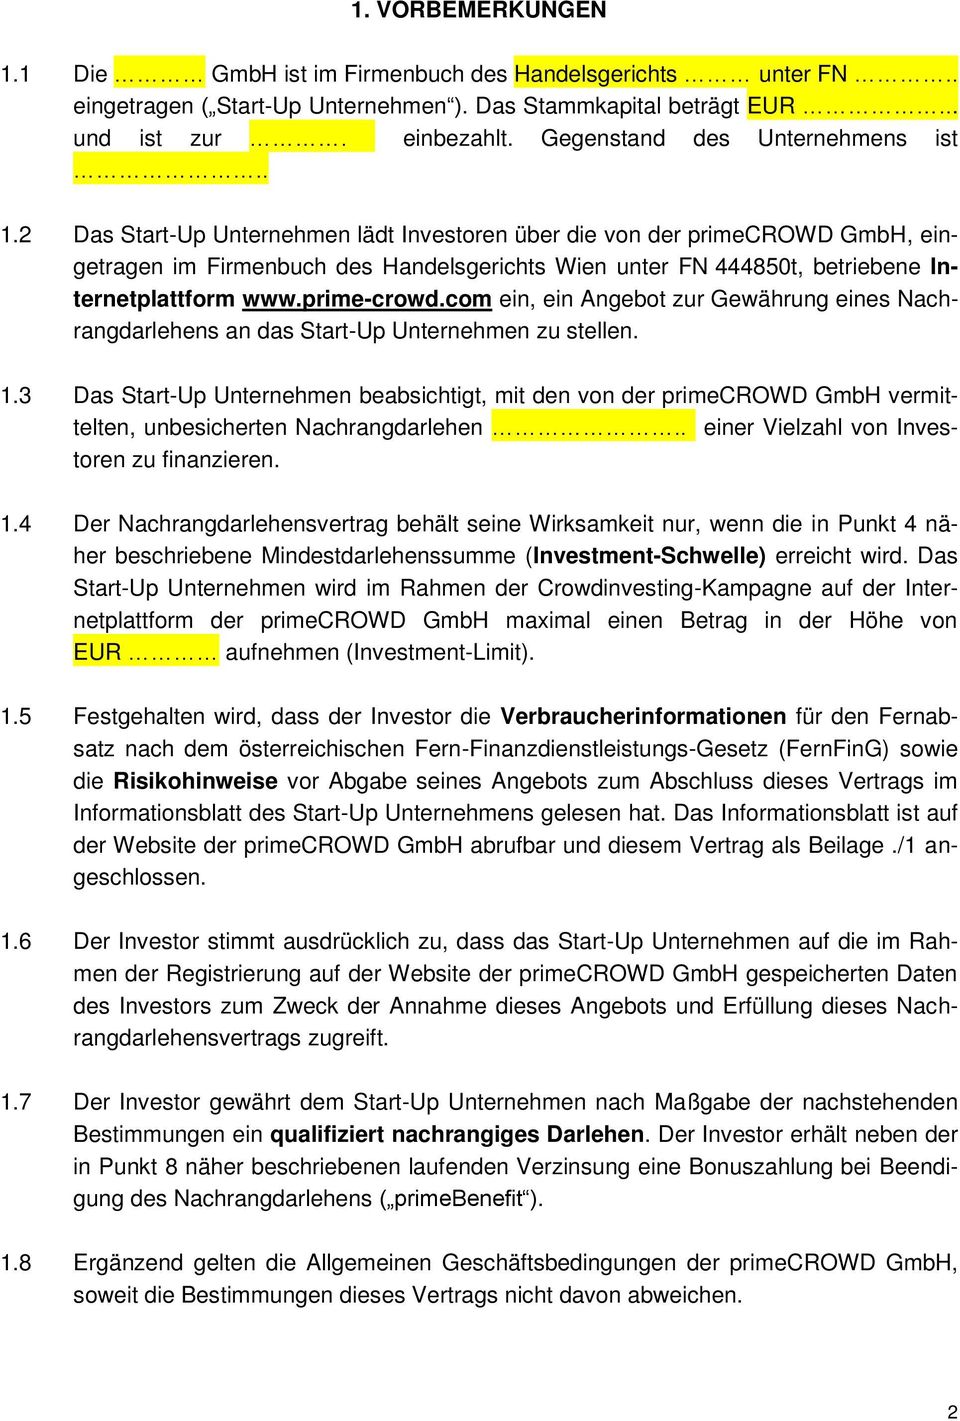 2 Das Start-Up Unternehmen lädt Investoren über die von der primecrowd GmbH, eingetragen im Firmenbuch des Handelsgerichts Wien unter FN 444850t, betriebene Internetplattform www.prime-crowd.